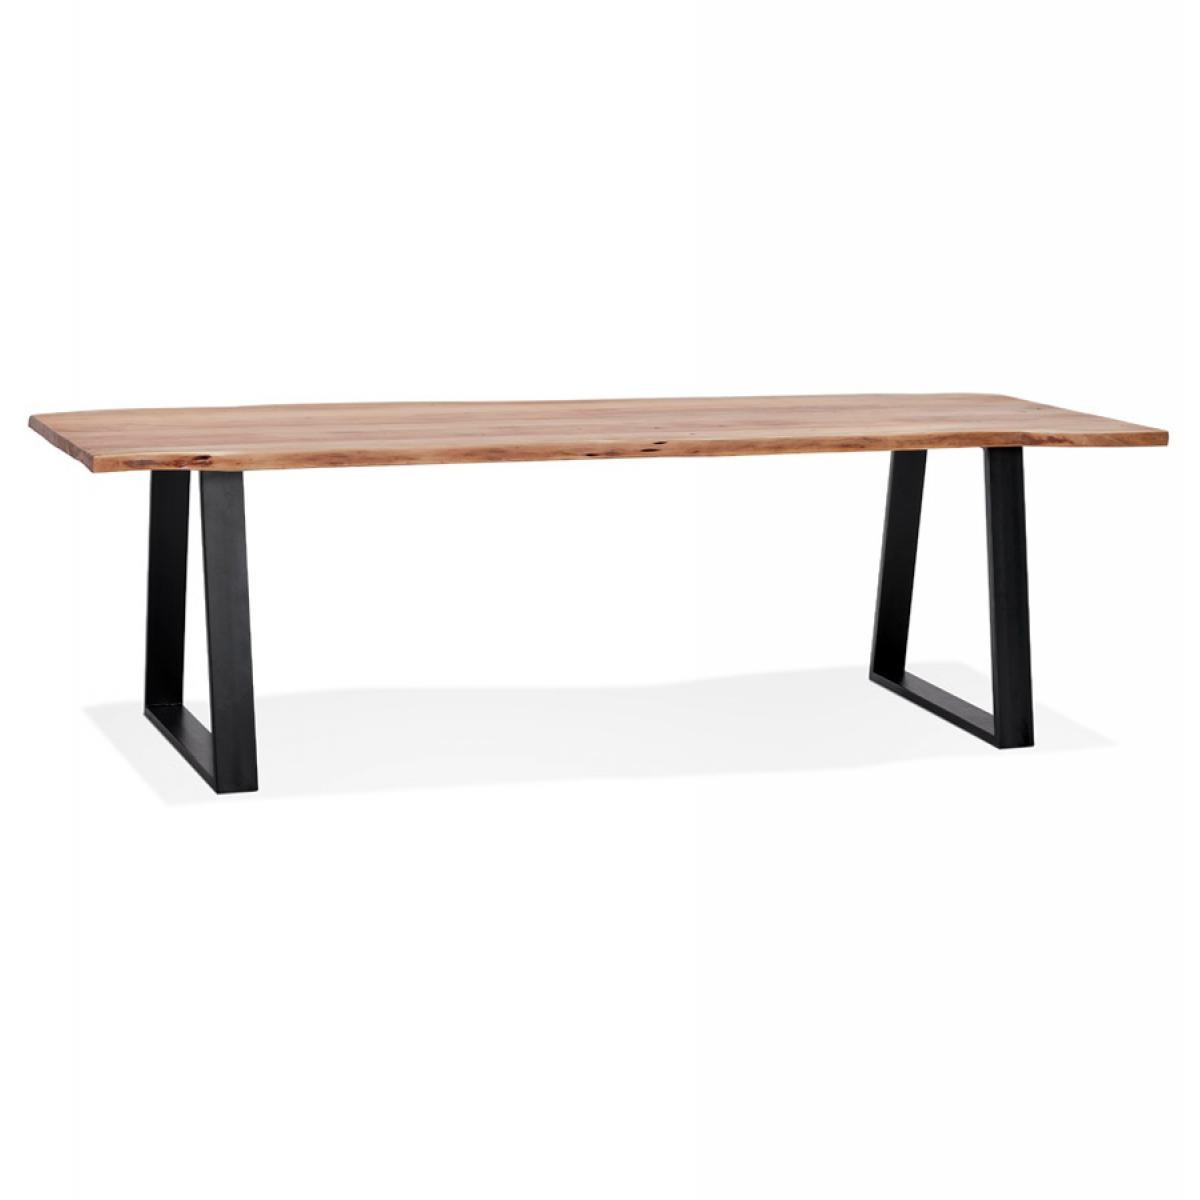 Alterego - Table de salle à manger style industriel 'RAFA' en bois massif et métal - 300x100 cm - Tables à manger